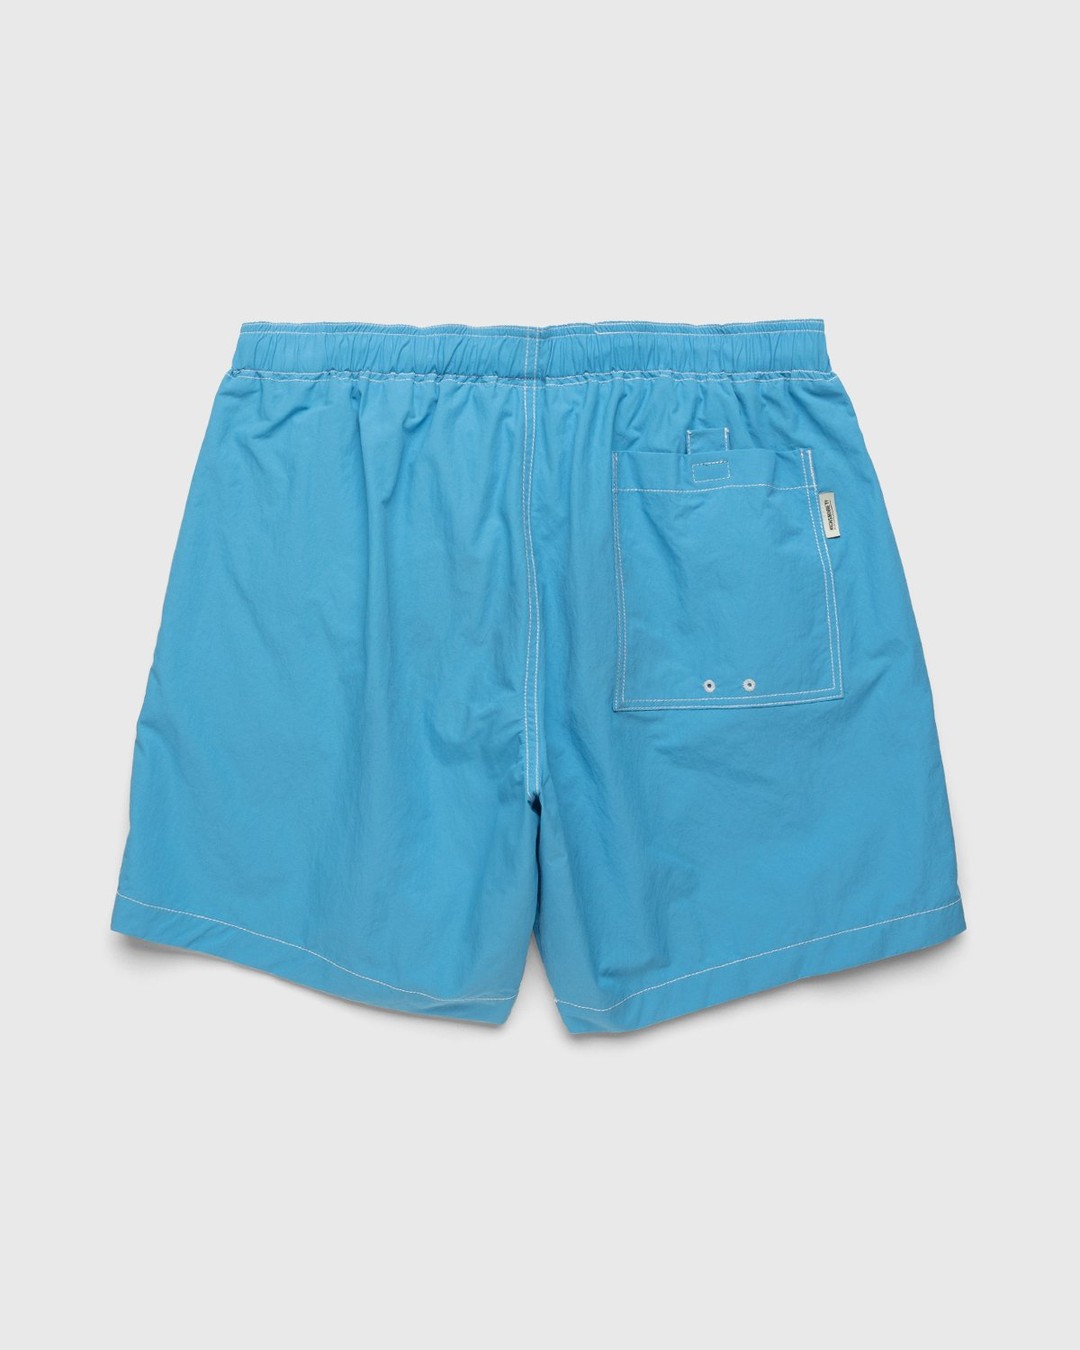 Highsnobiety – Contrast Brushed Nylon Water Shorts Blue - Shorts - Blue - Image 2